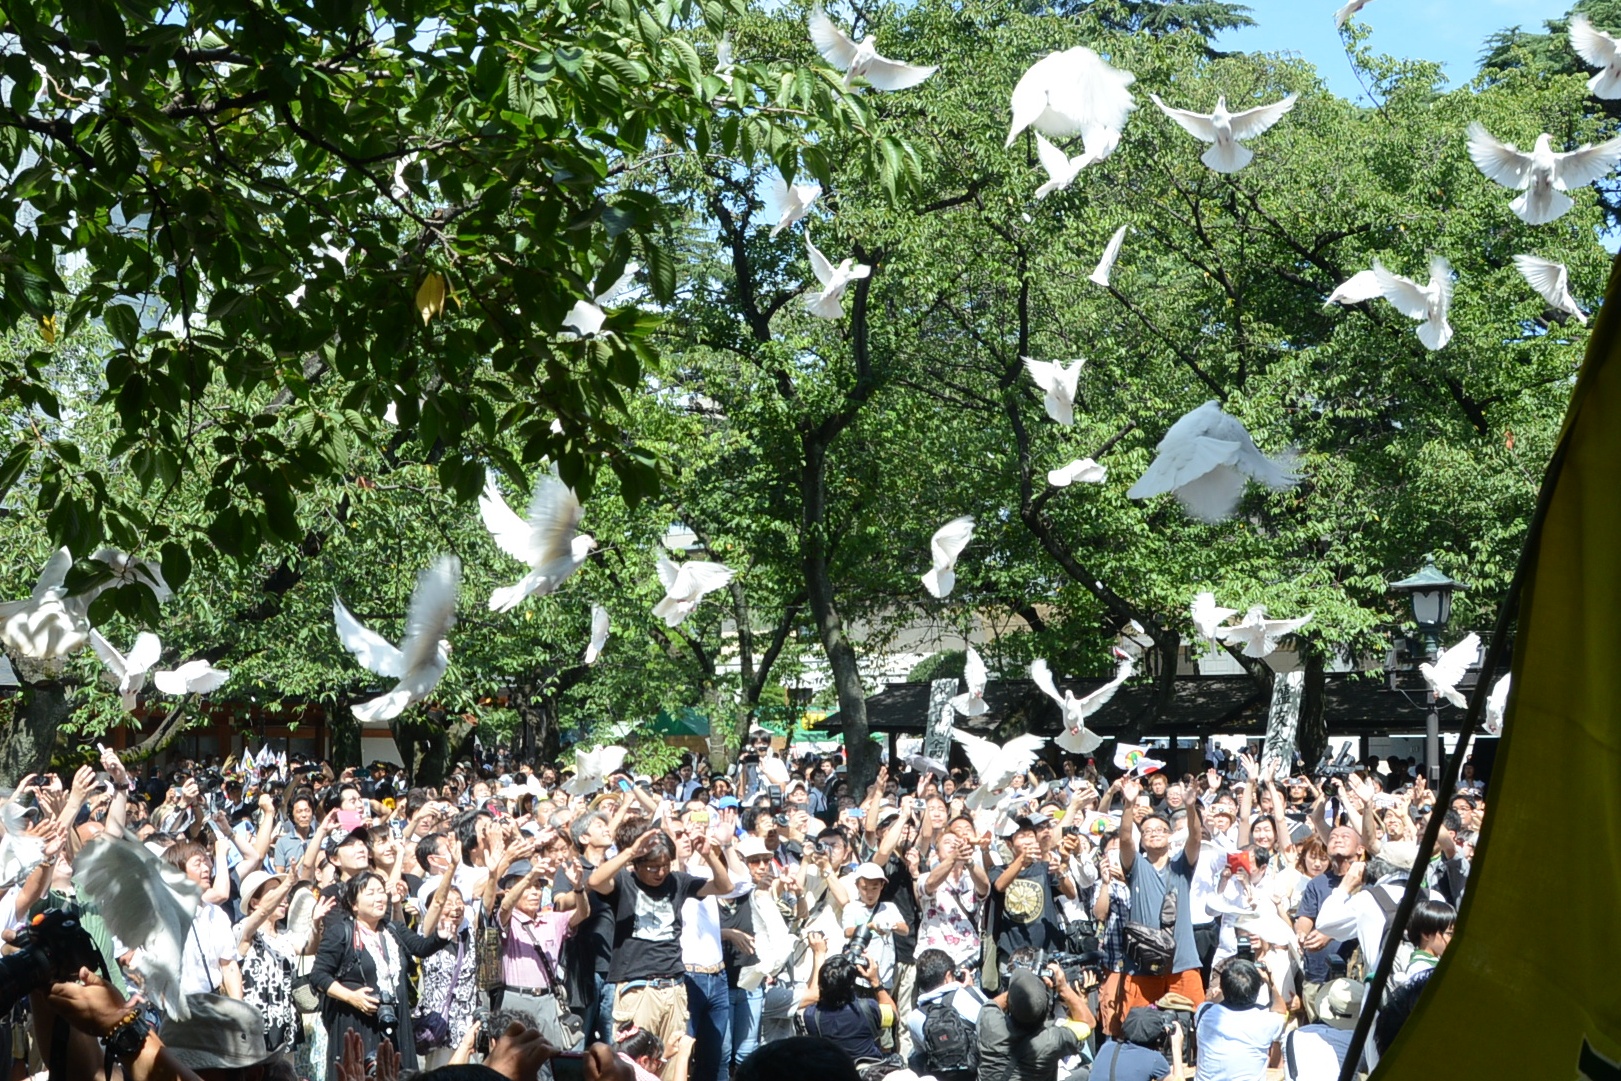 たくさんの人達が白鳩を一斉に大空に放っている写真